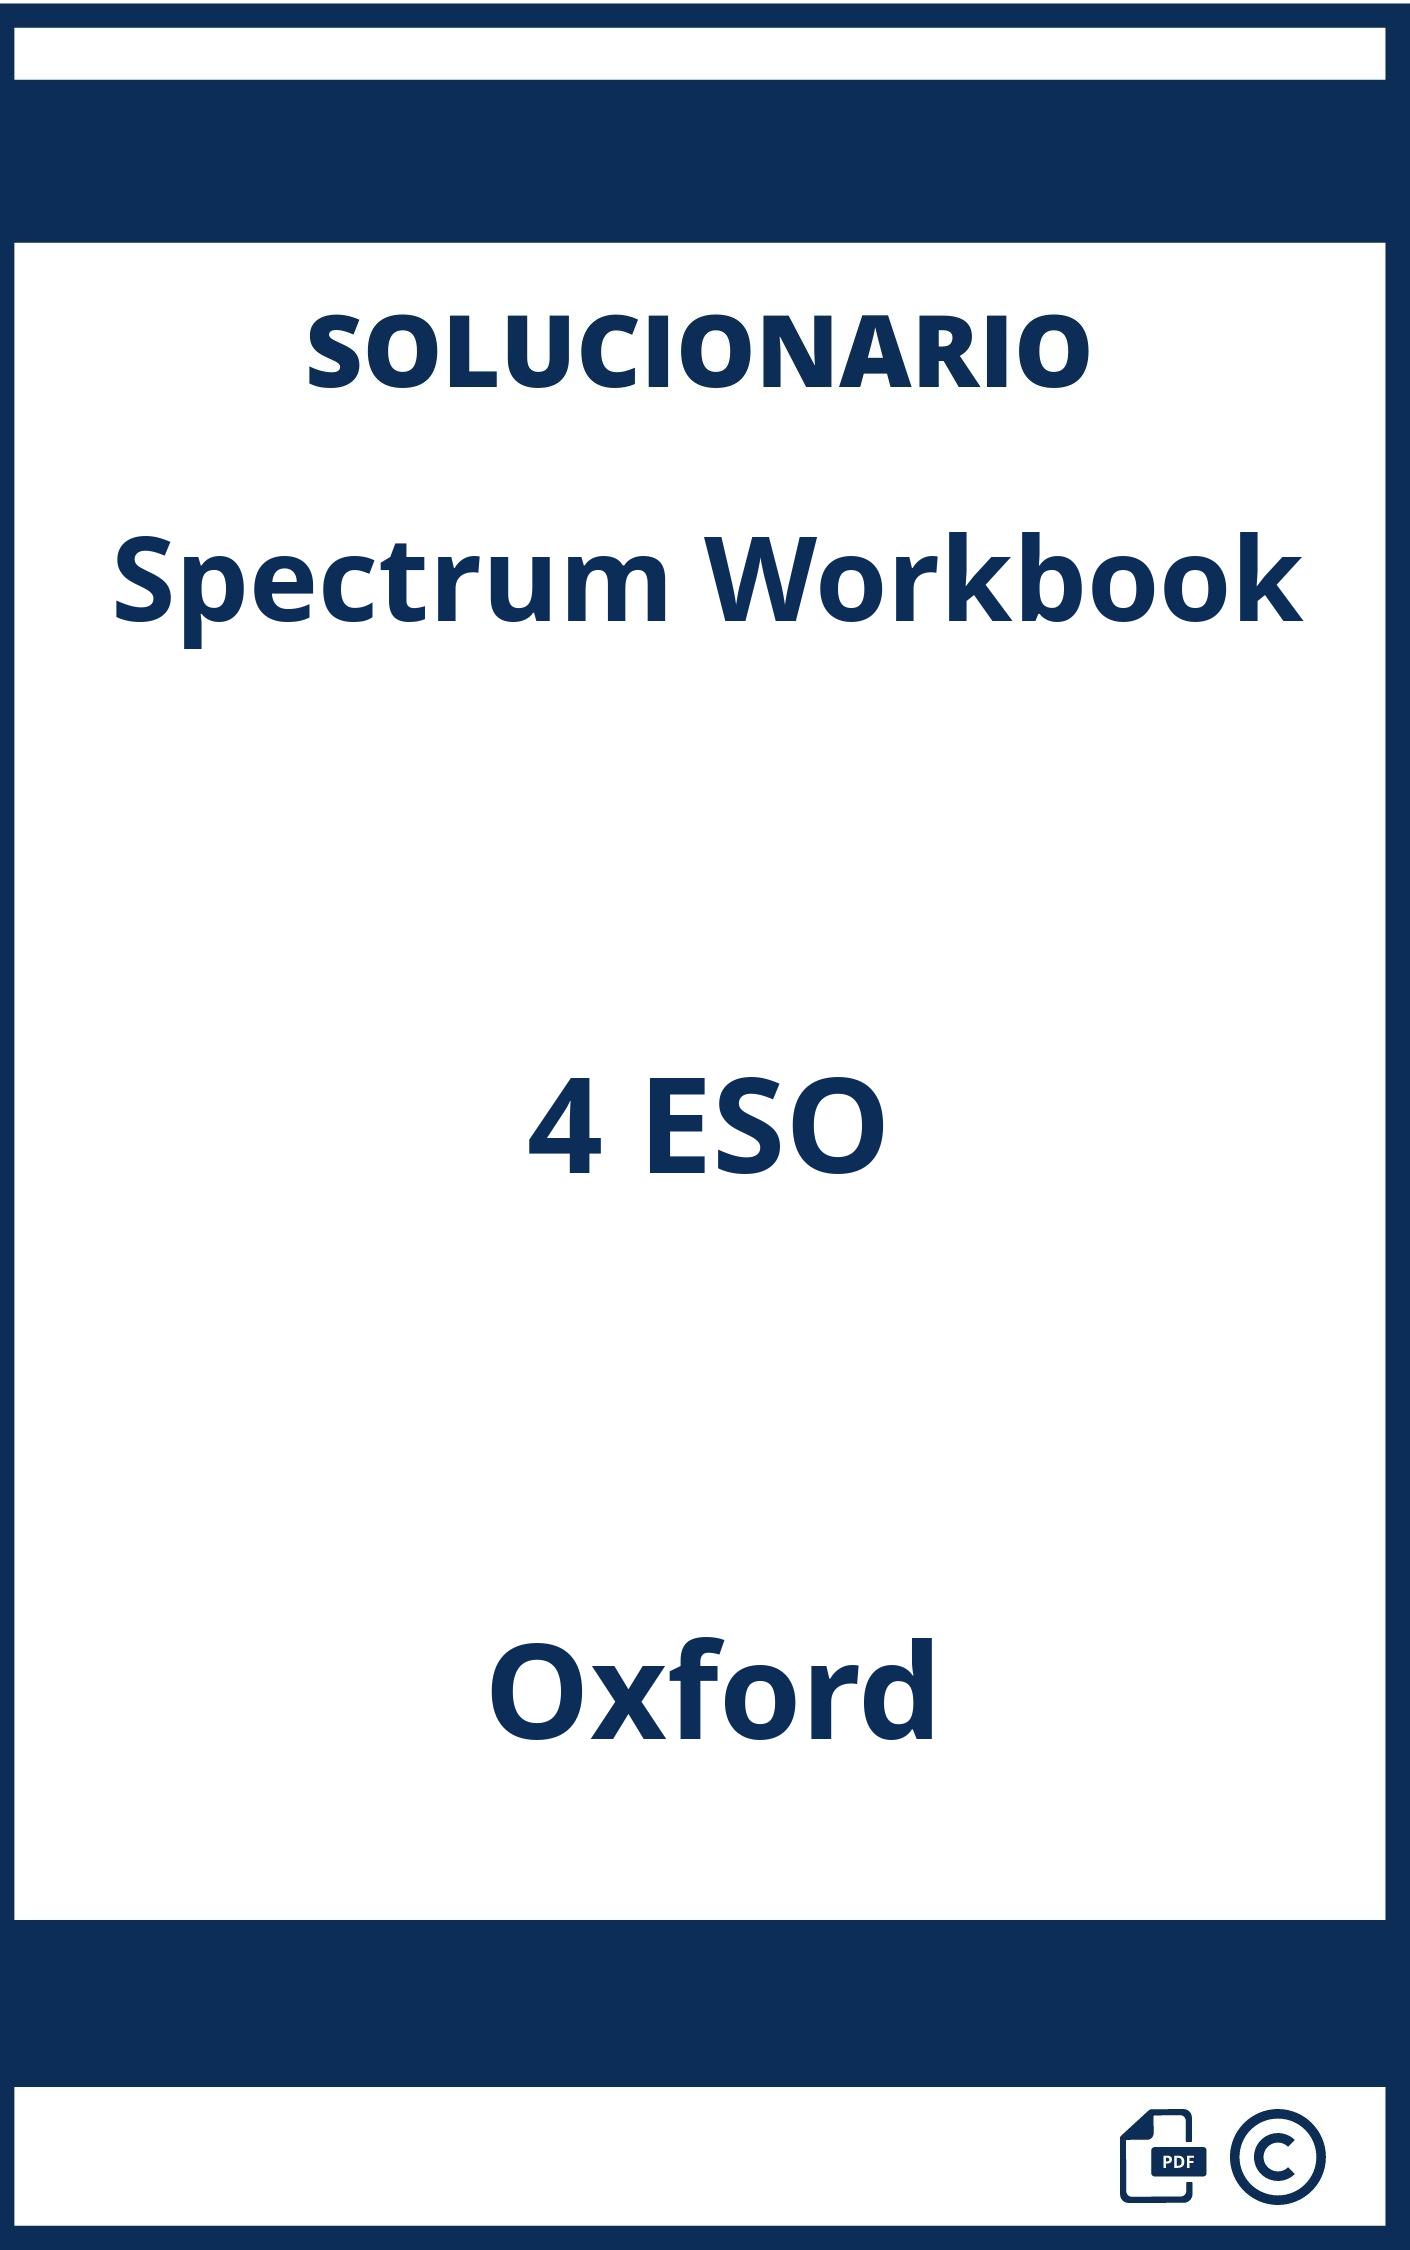 Solucionario Spectrum Workbook 4 ESO Oxford